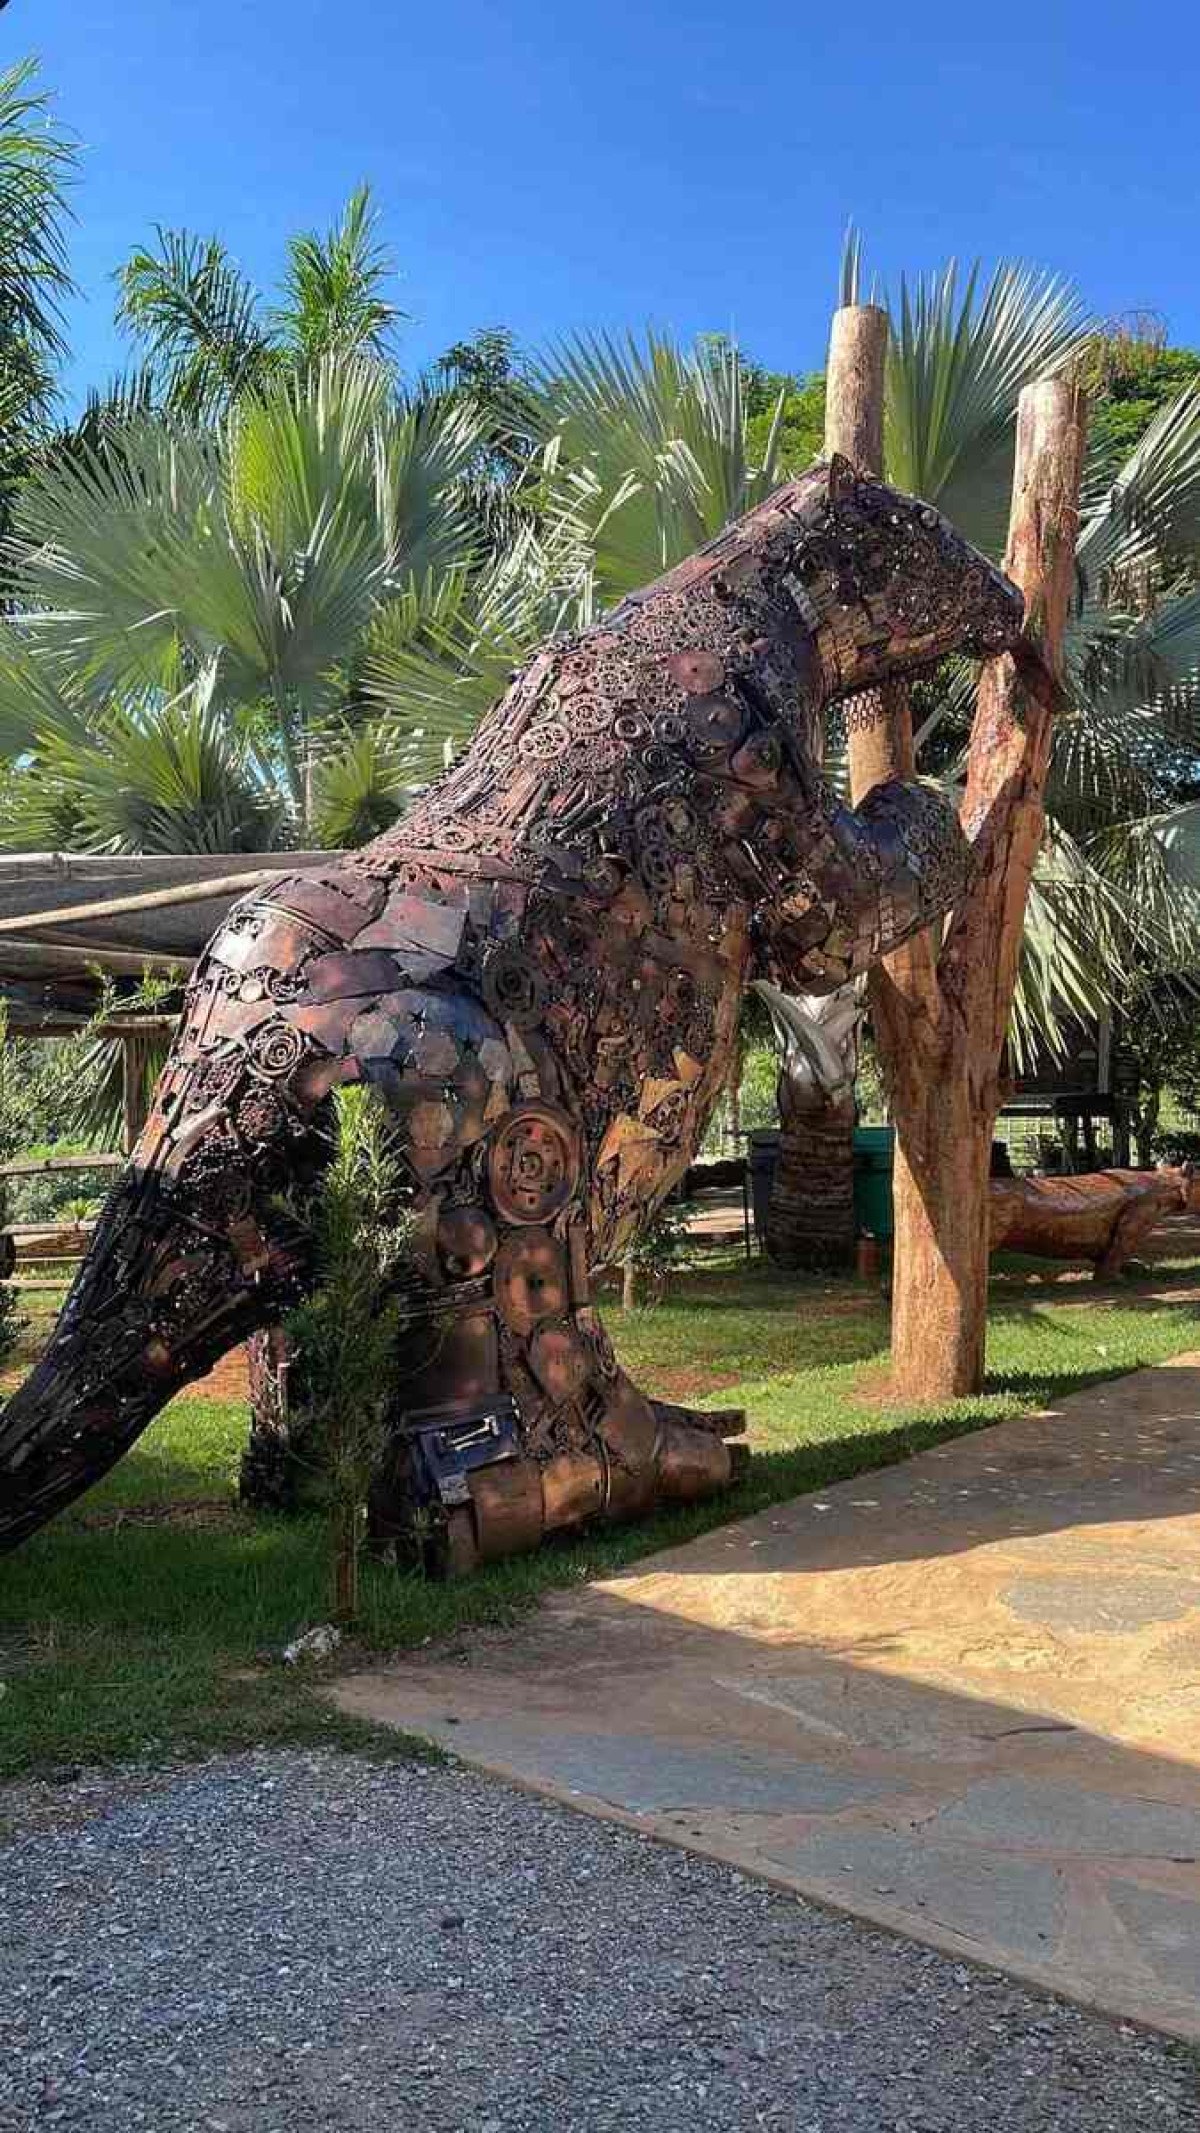 Gruta ganha réplica de preguiça gigante descoberta por Peter Lund